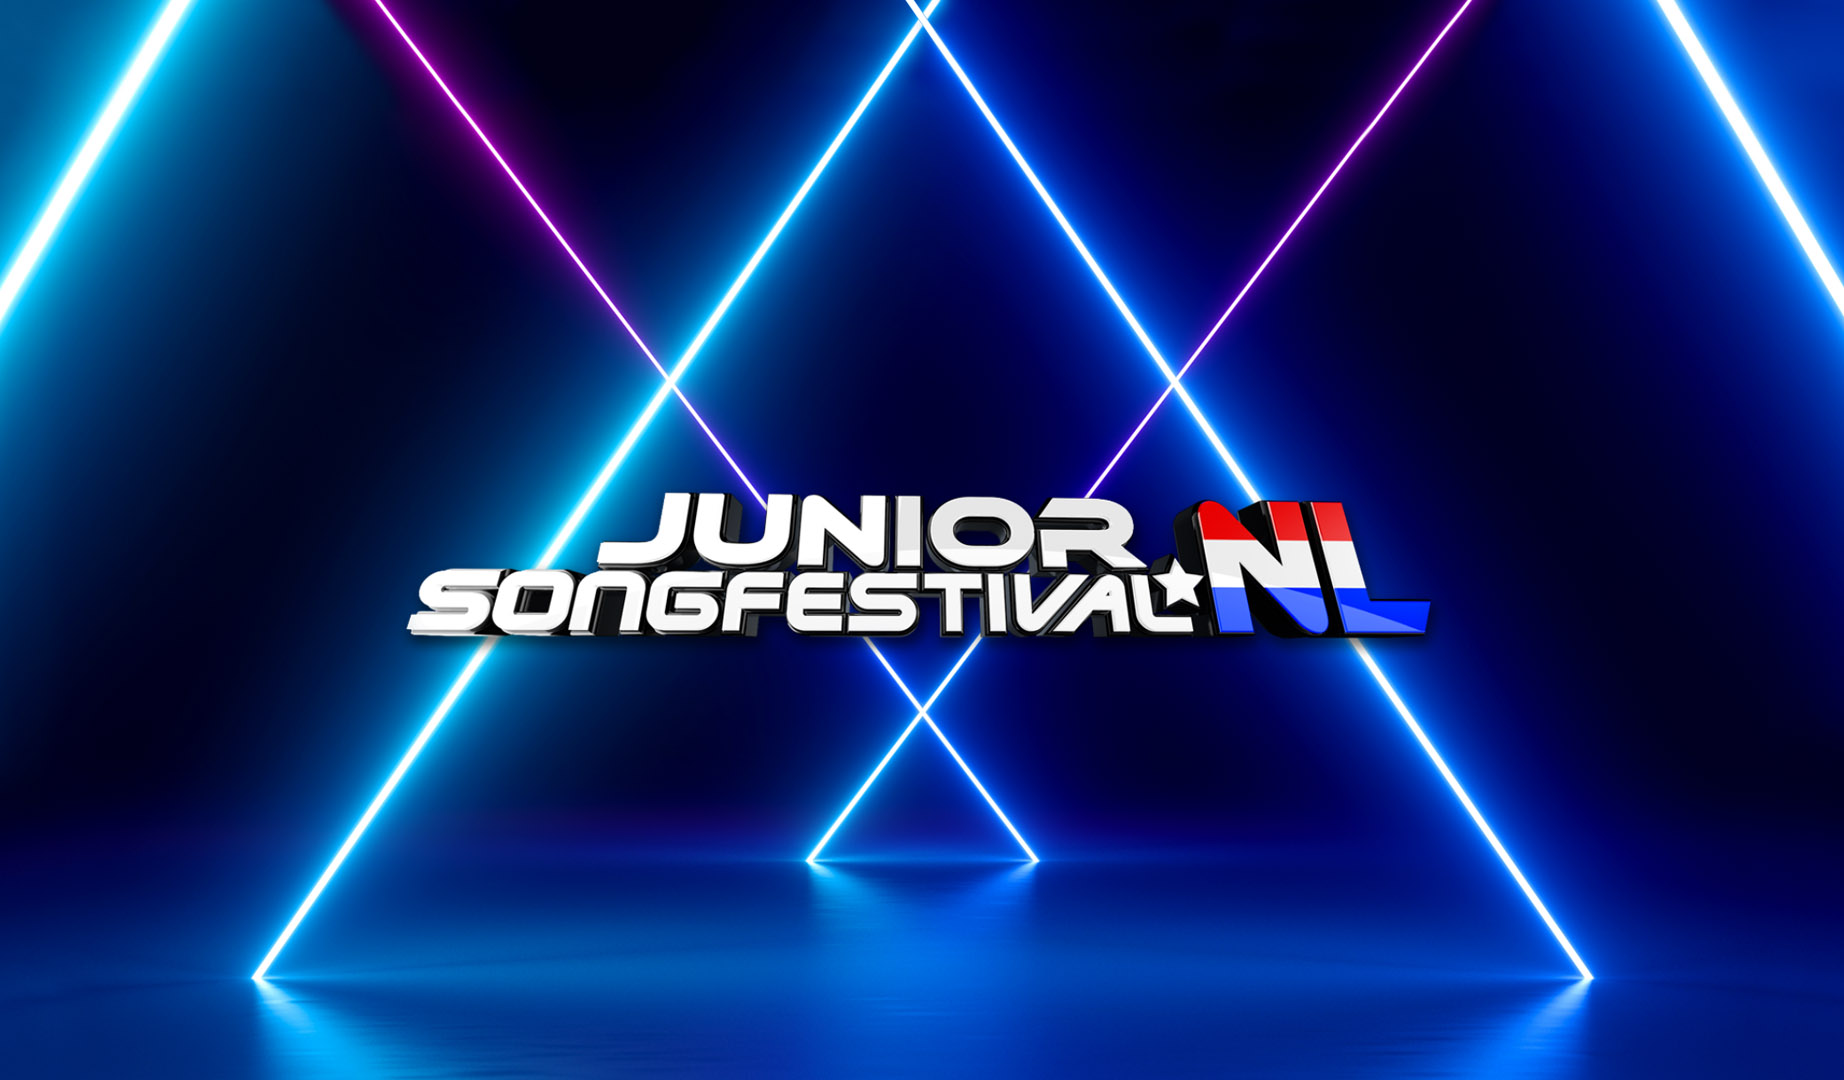 Países Bajos anuncia los jurados profesionales e infantiles para la final del Junior Songfestival 2021